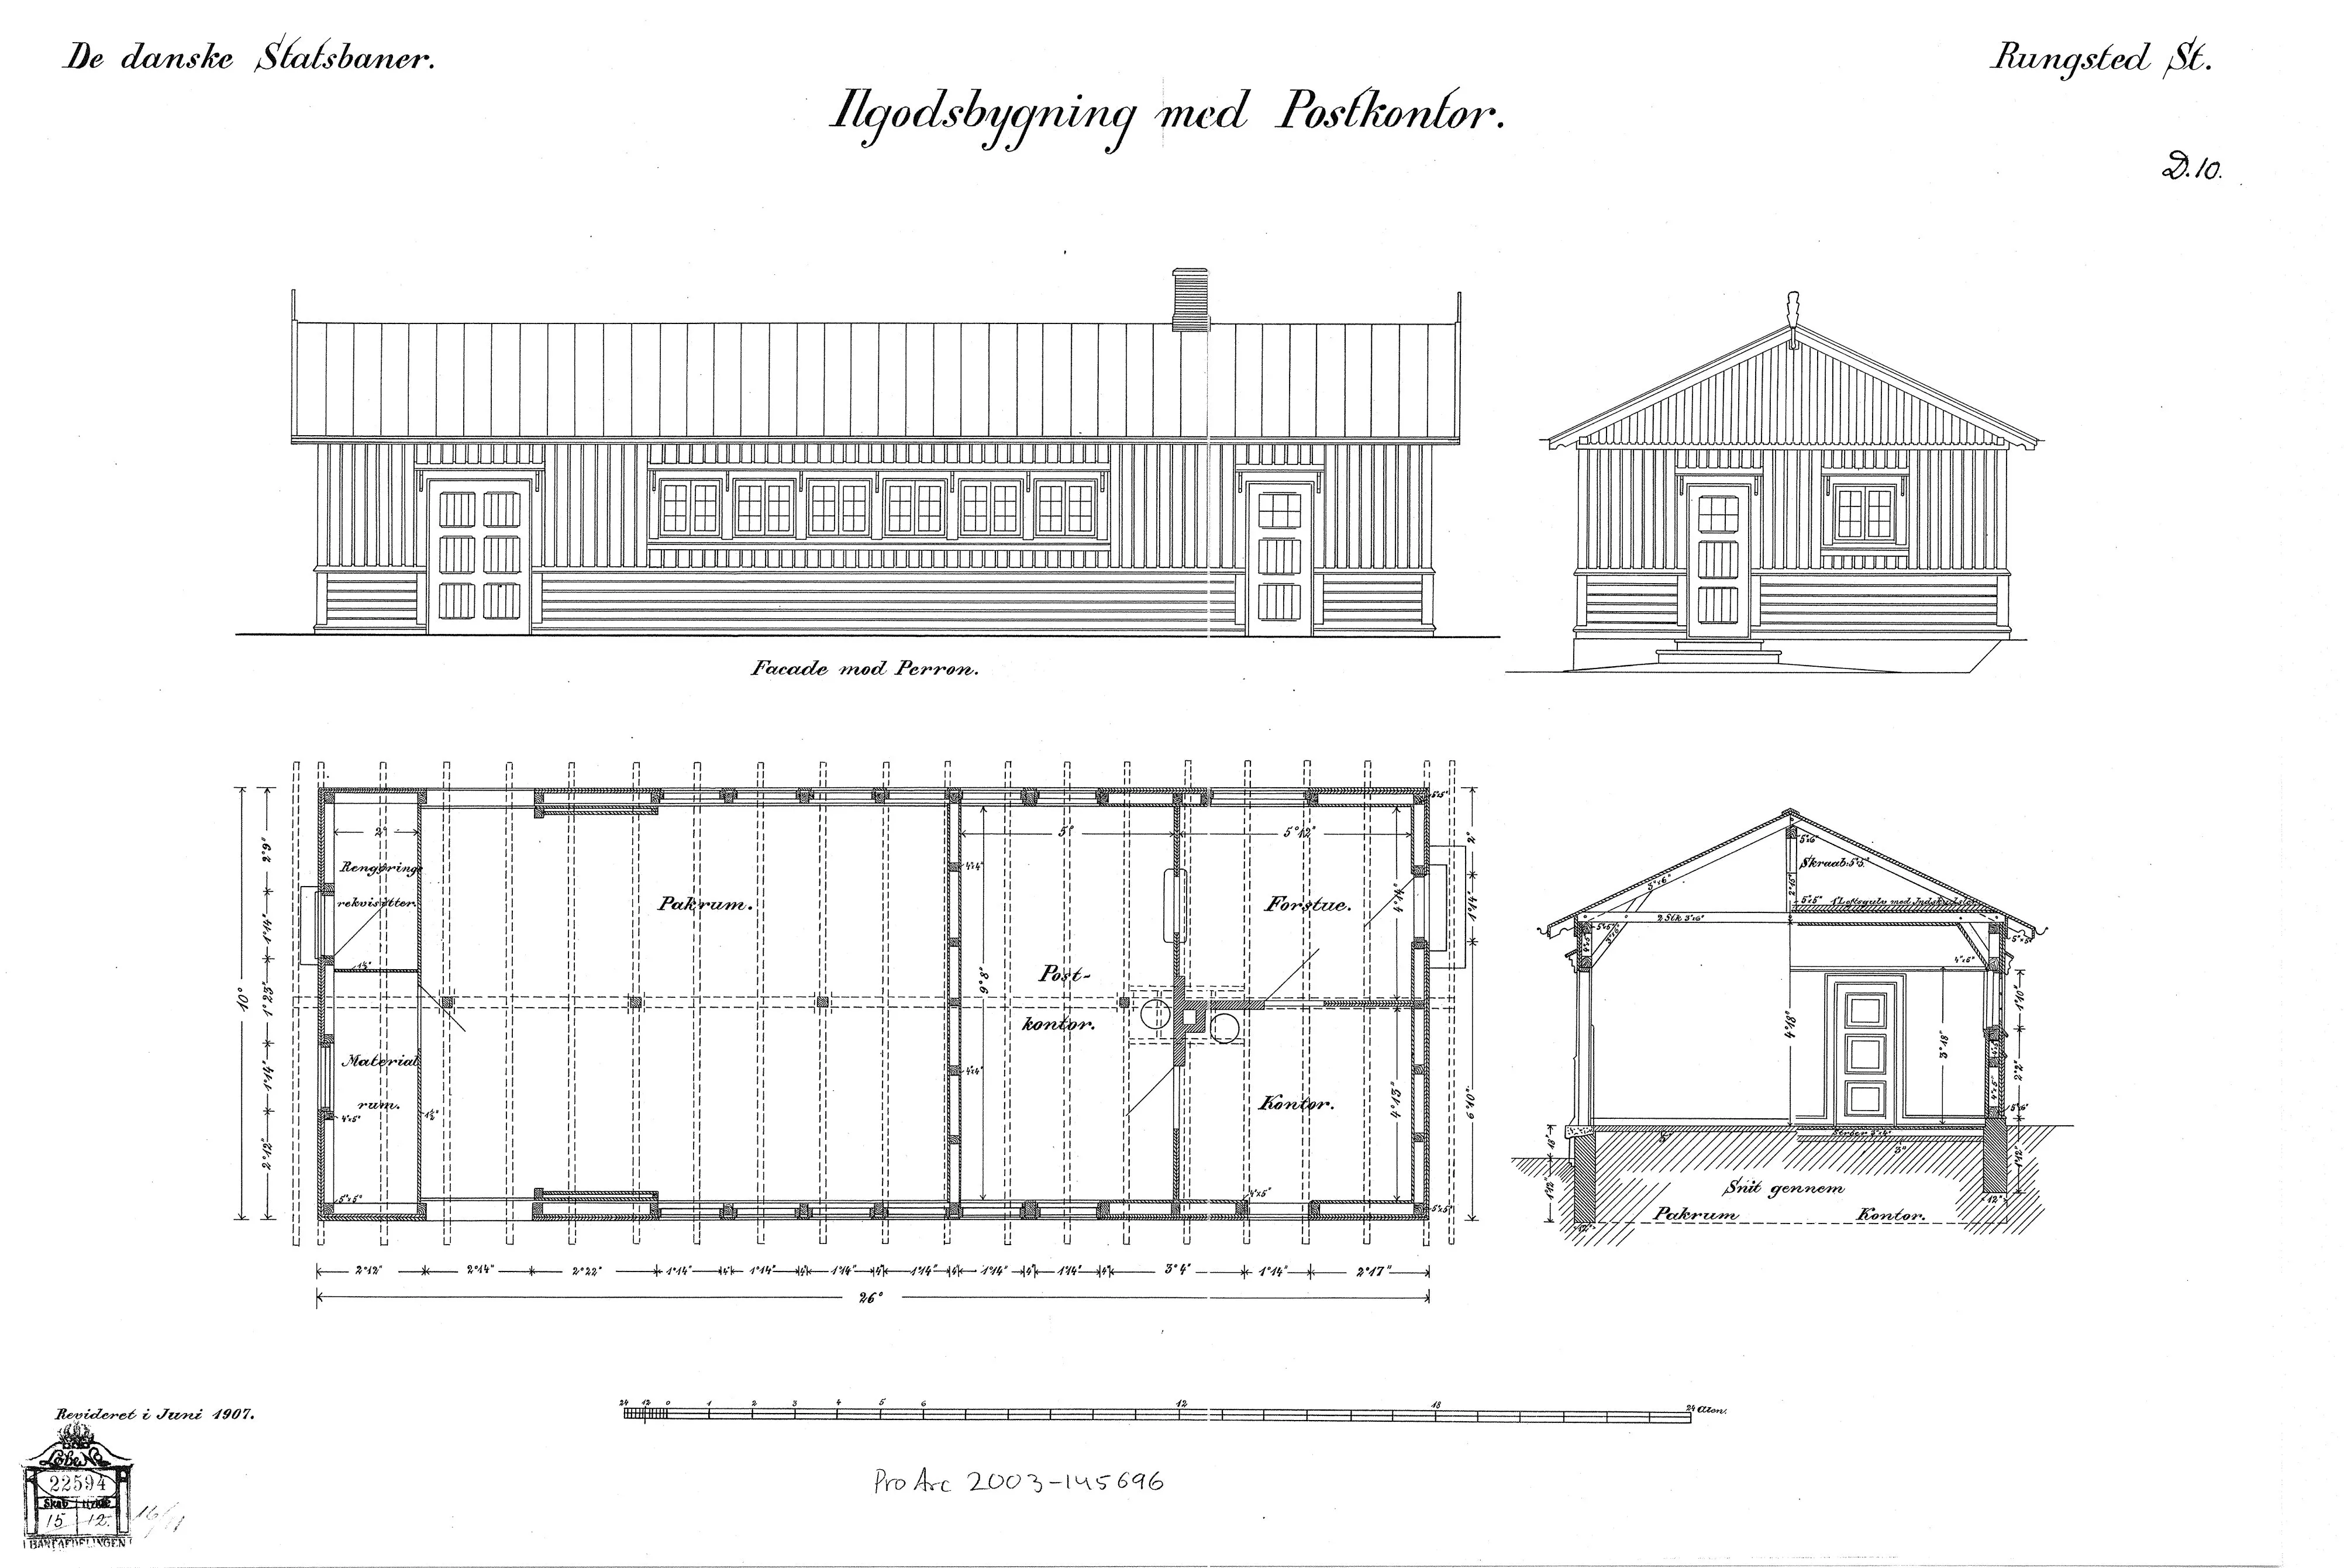 Tegning af Ilgodsbygning med postkontor ved Rungsted Kyst Station.